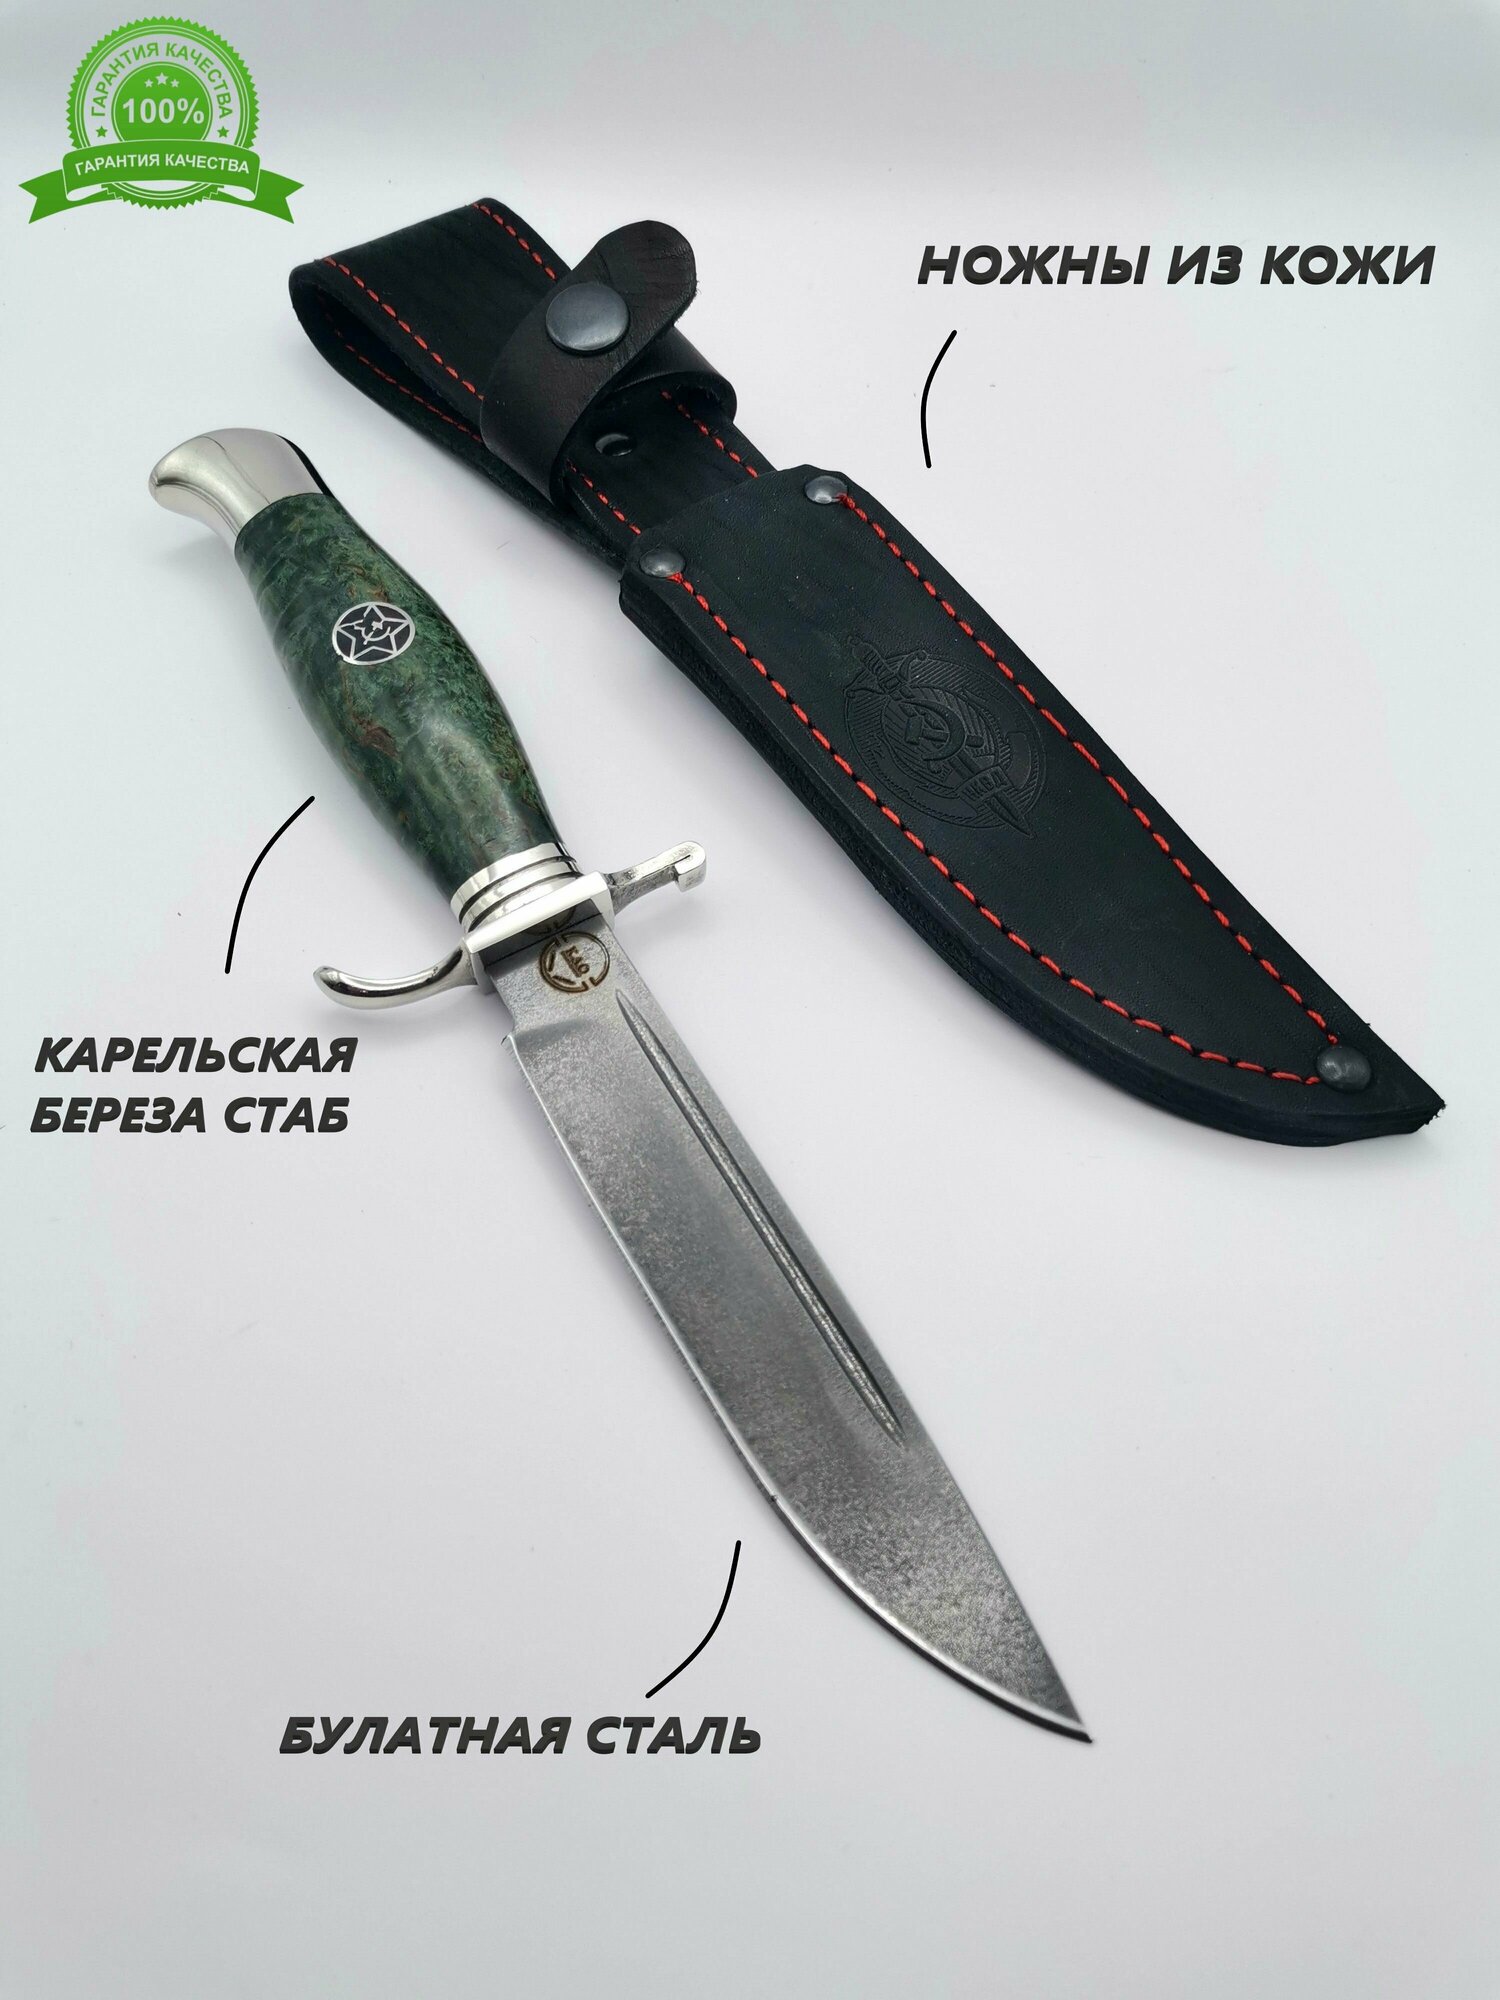 Финка НКВД кованая сталь булат со звездами для охоты, рыбалки, туризма, коллекции, нож нескладной модели МТ-107